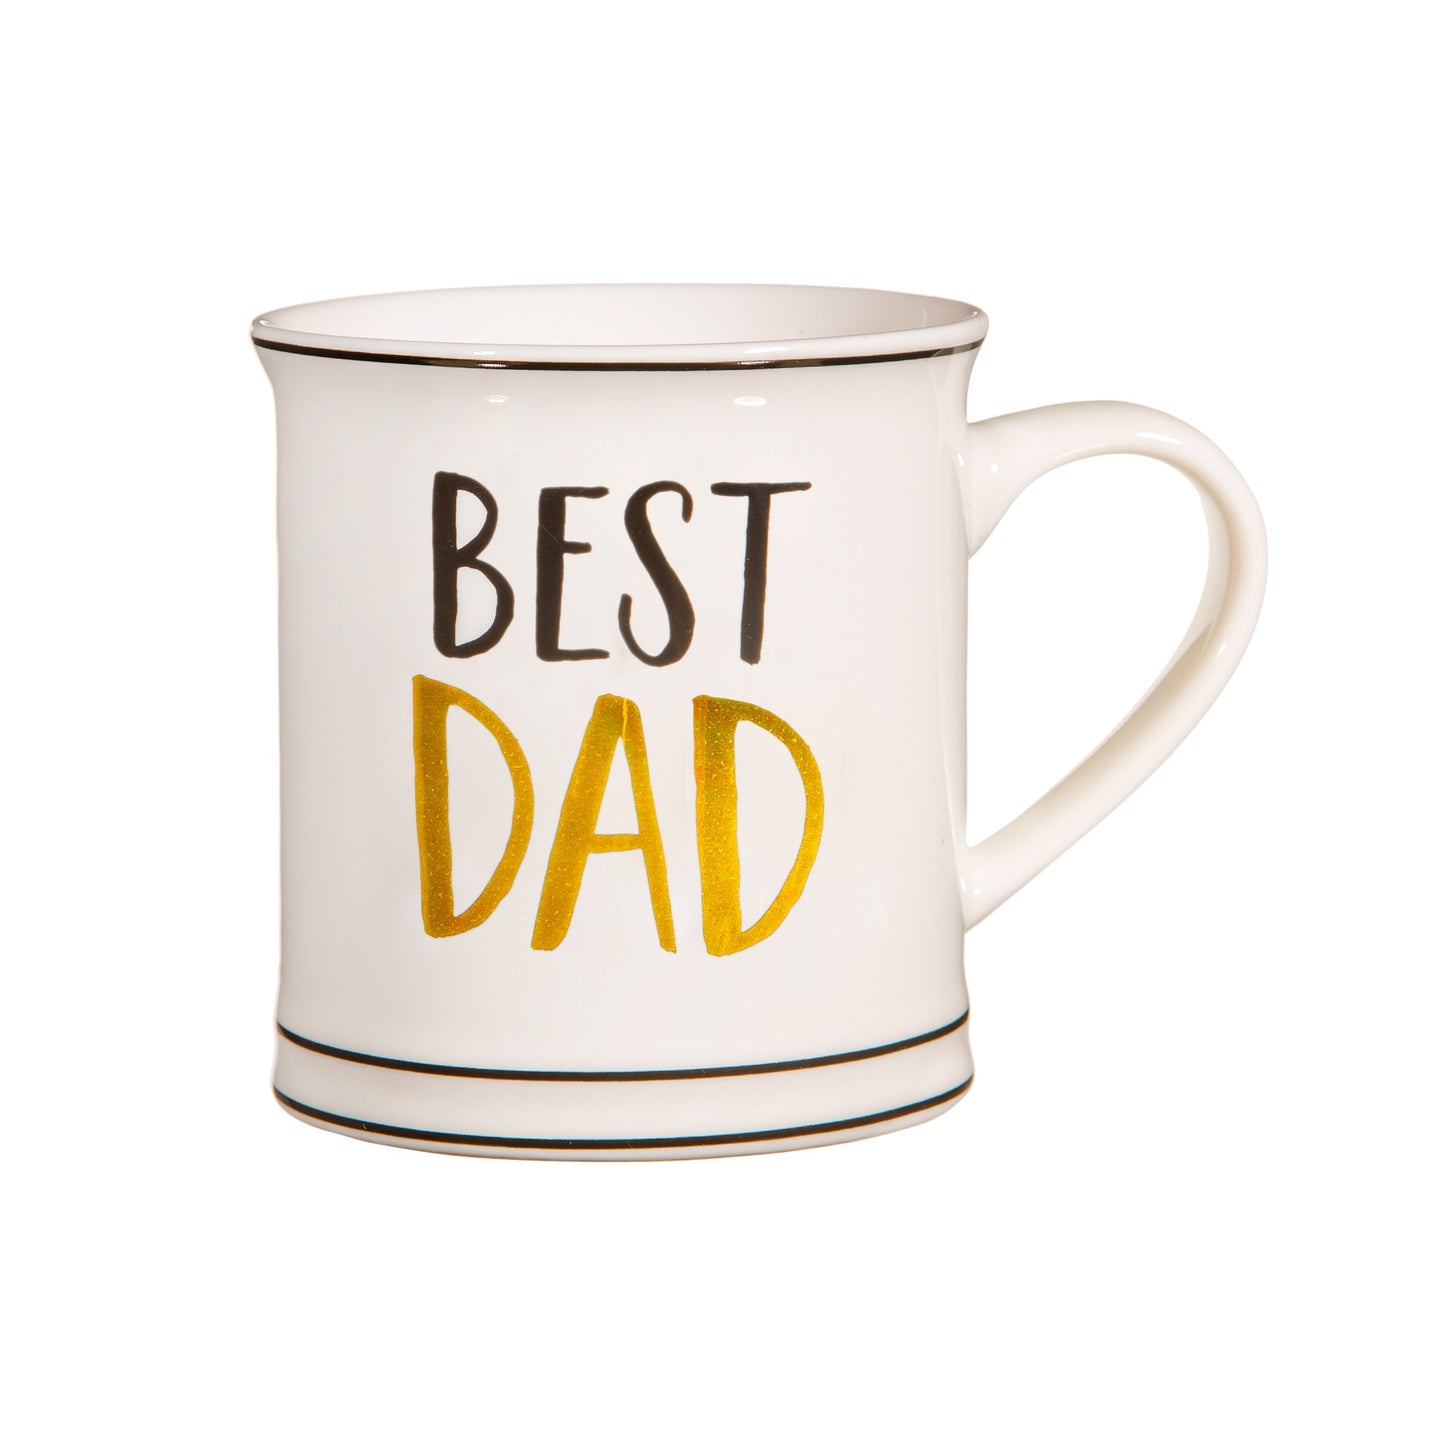 Best Dad Mug - Black & Gold